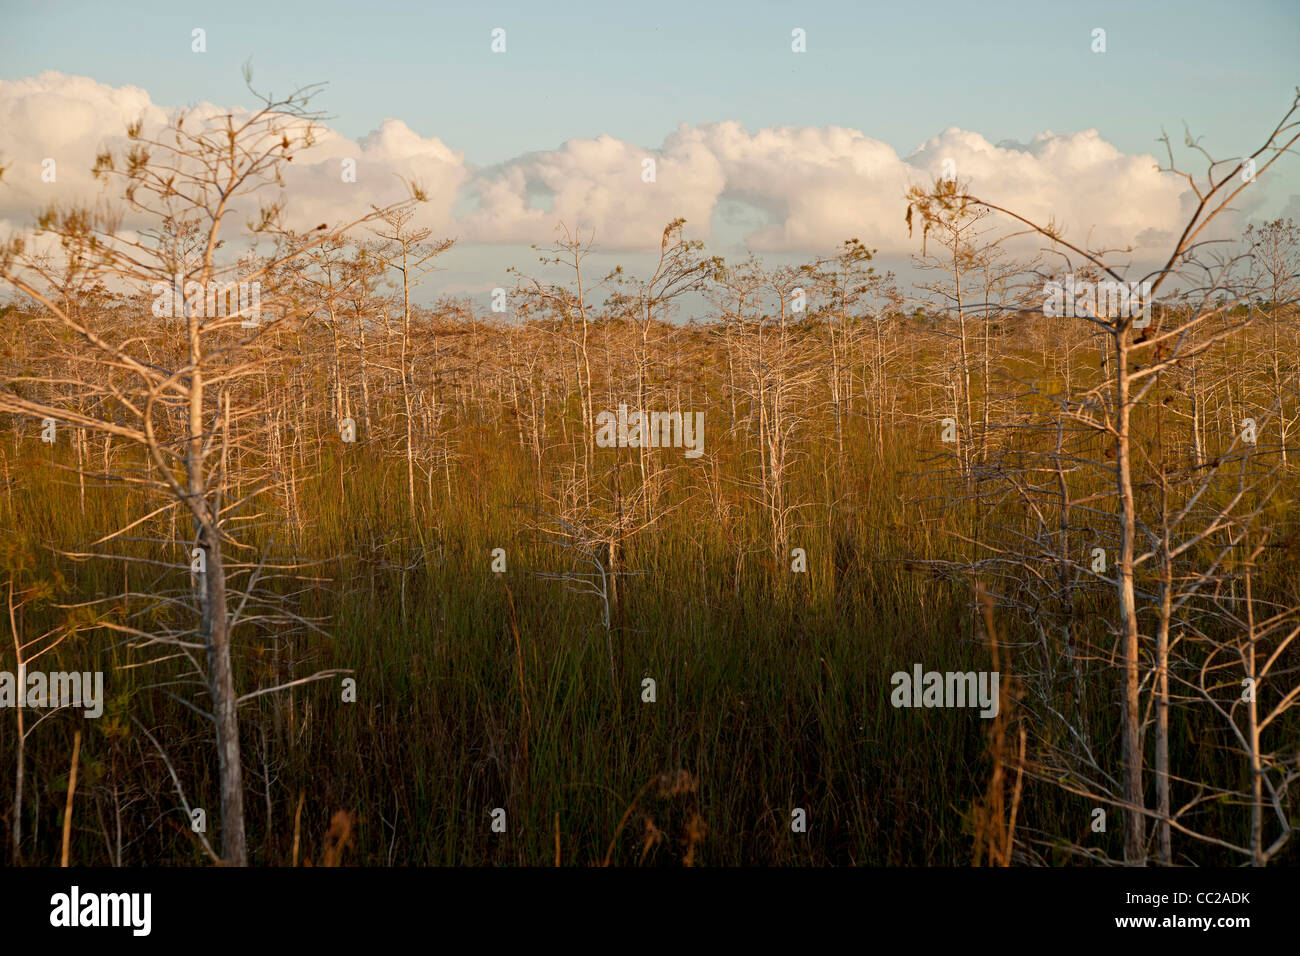 Marais typique paysage aux arbres du parc national des Everglades, Florida, USA Banque D'Images